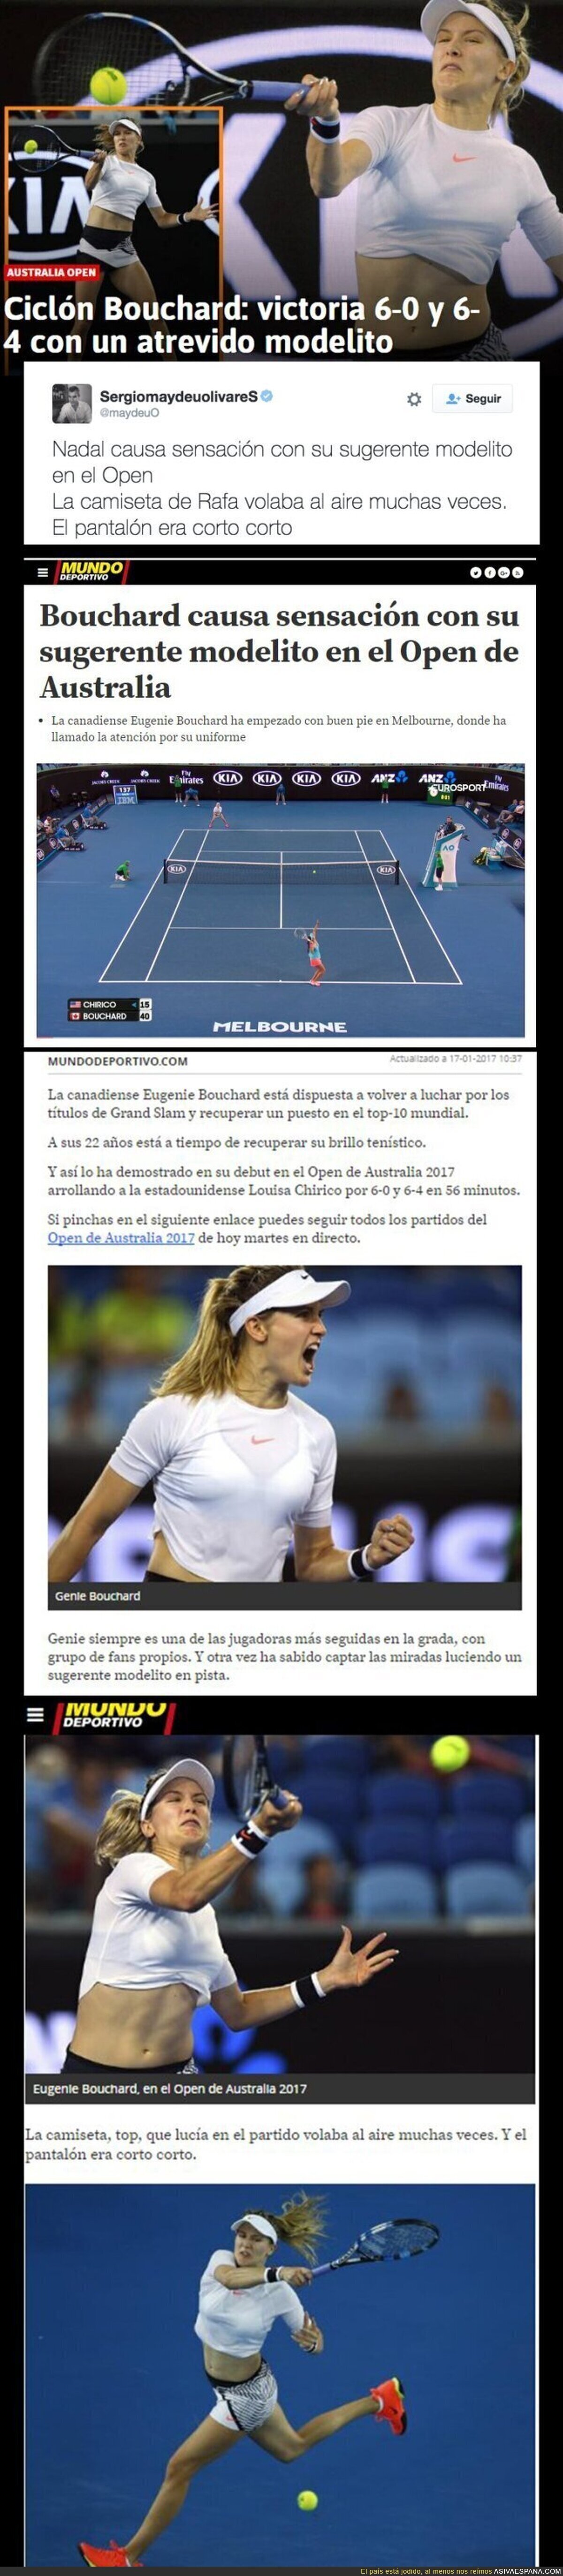 El machismo repugnante del diario AS y Mundo Deportivo por la forma de vestir de una tenista